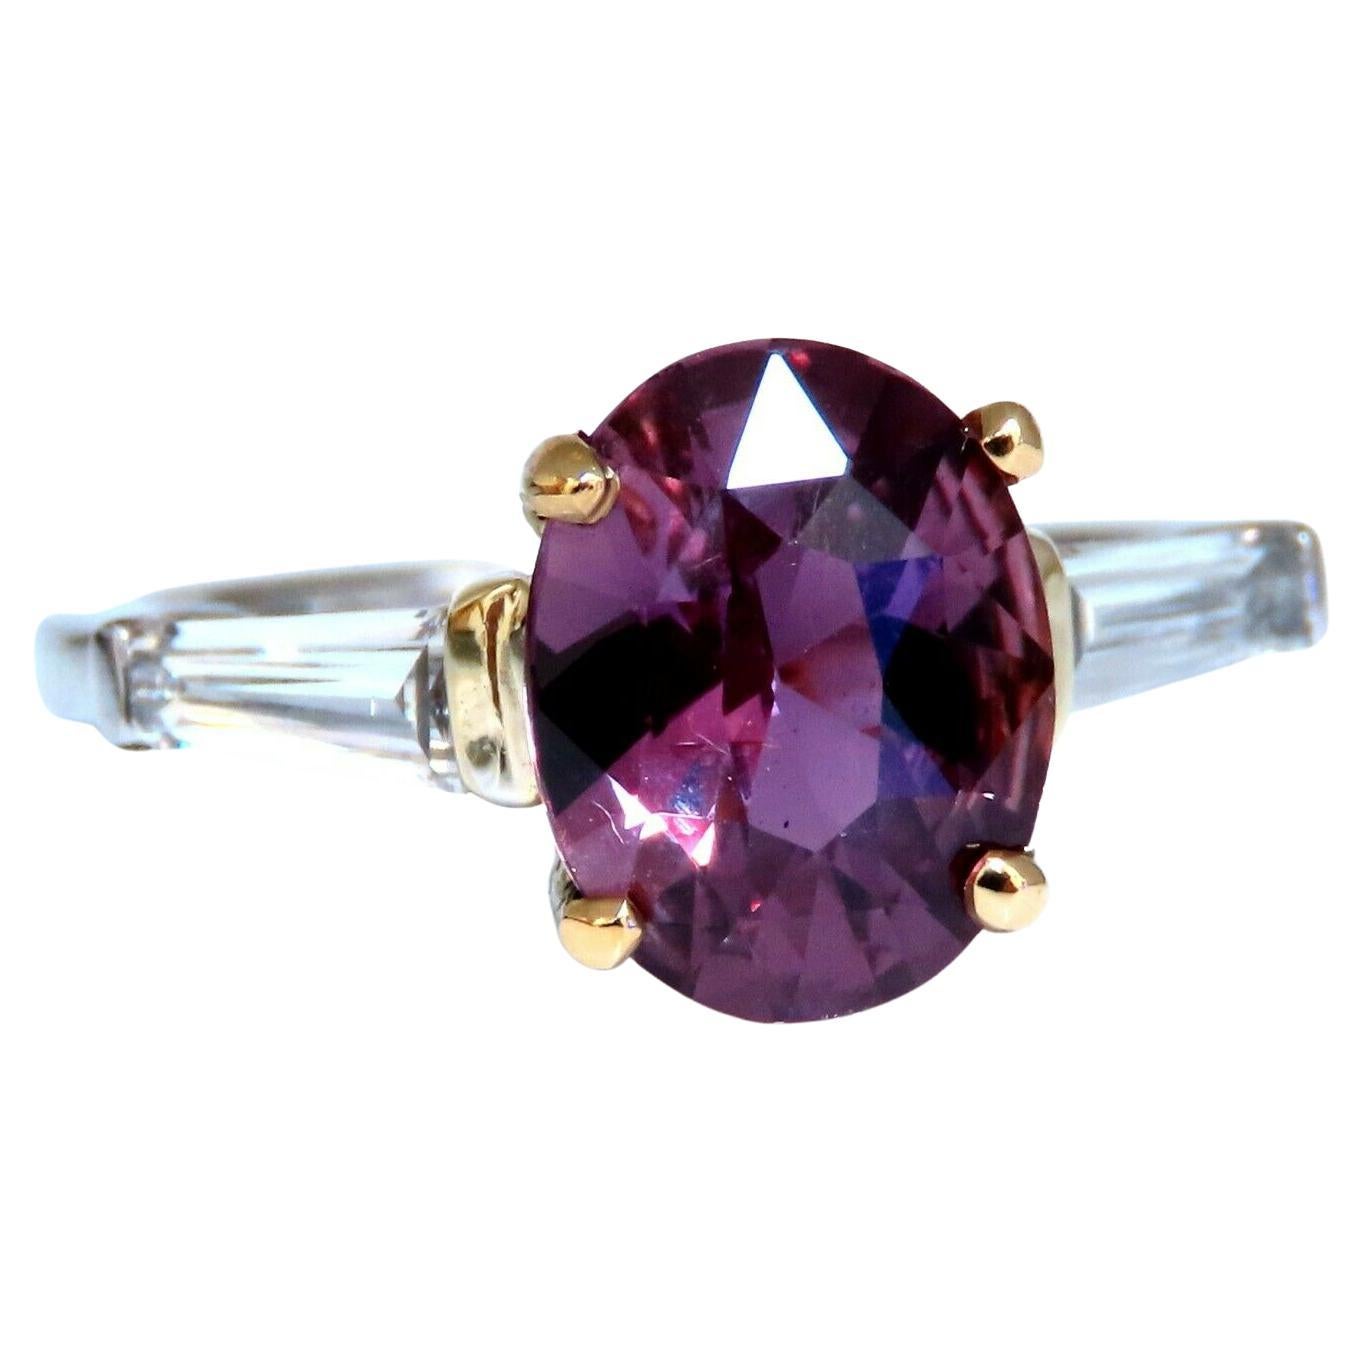 Bague en or 18 carats avec diamants et saphir rose violet naturel de 2,77 carats certifié par le GIA